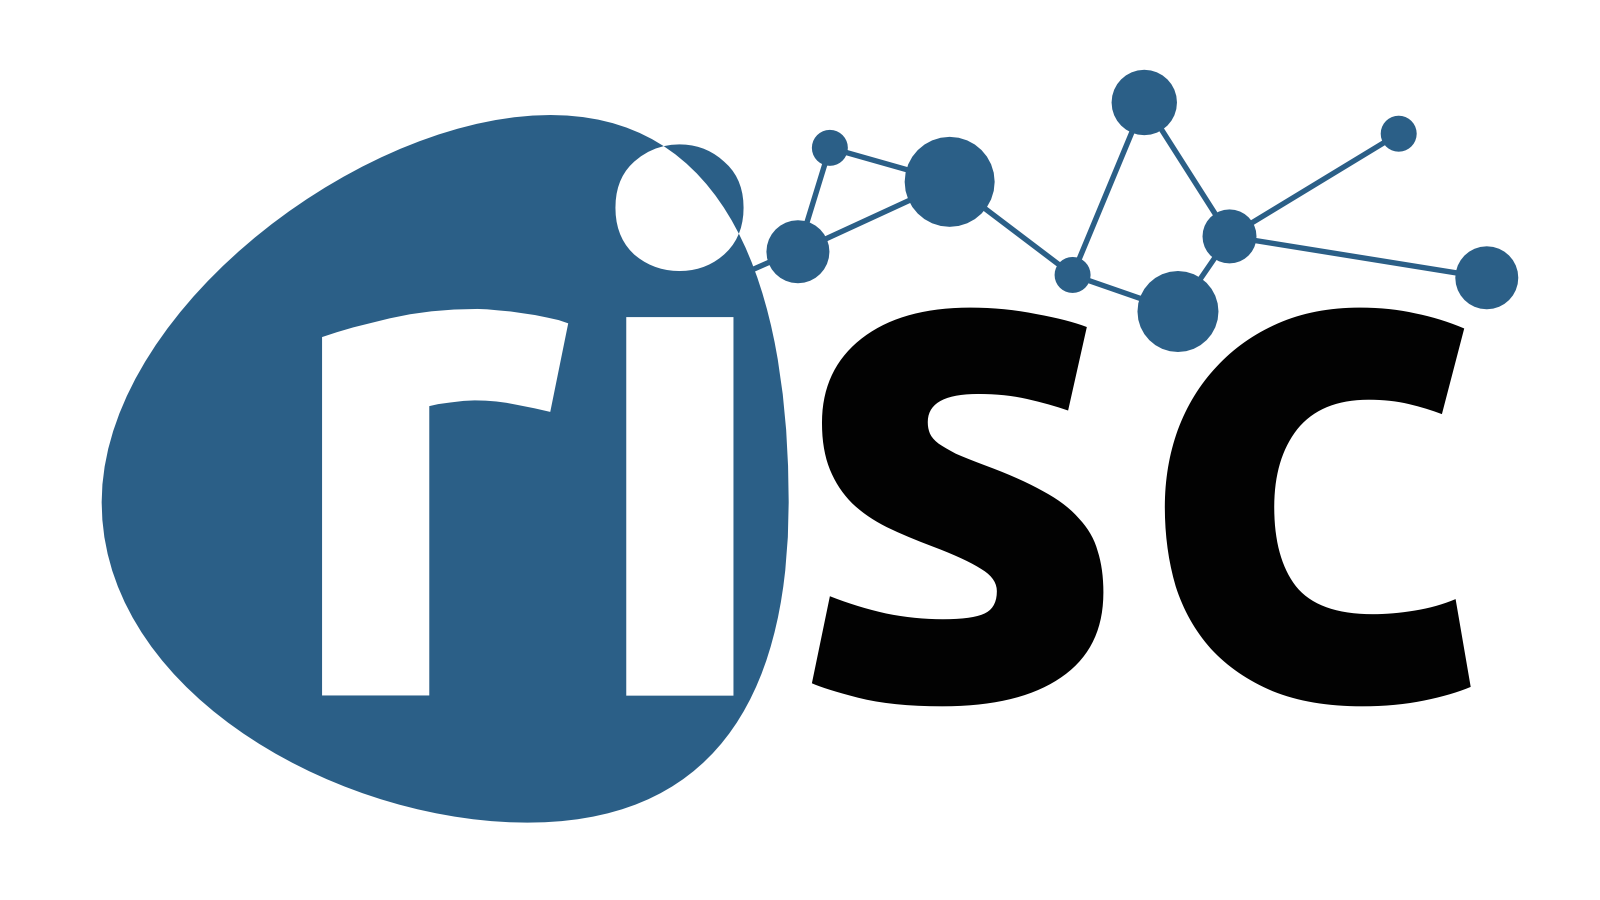 RISC logo